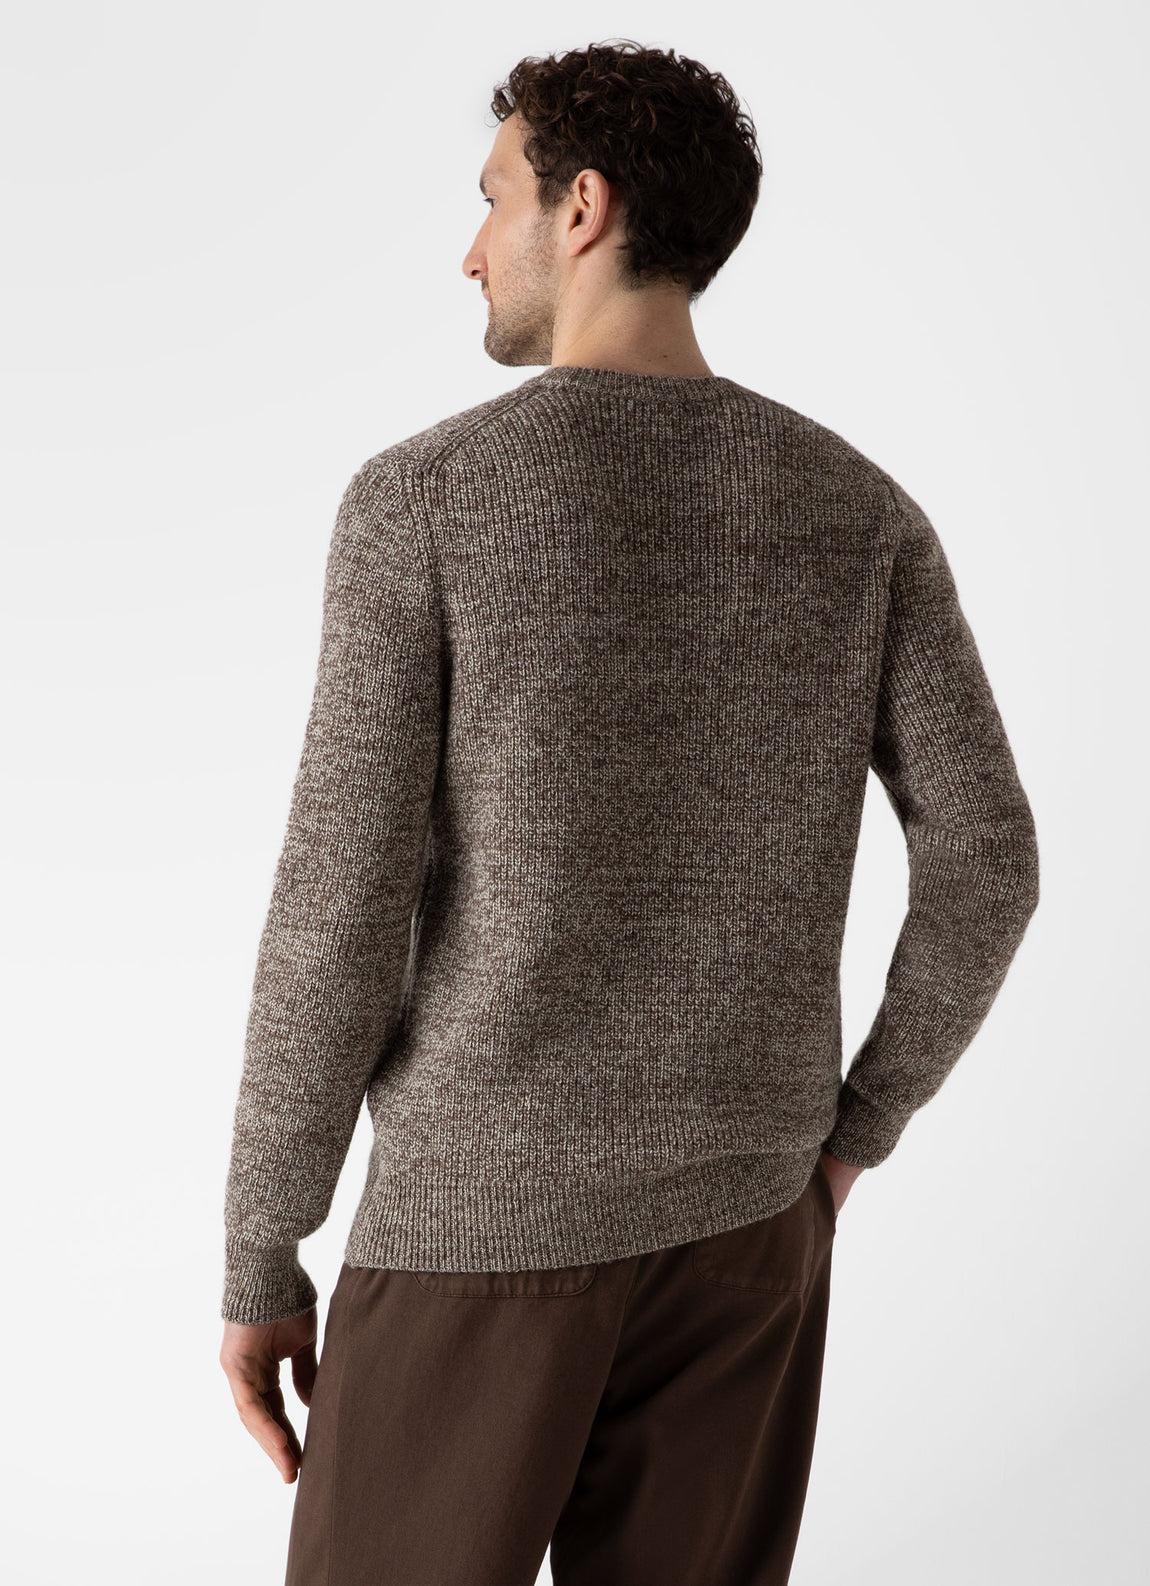 Men's Luxury British Wool Jumper in Natural Ecru/Brown Twist